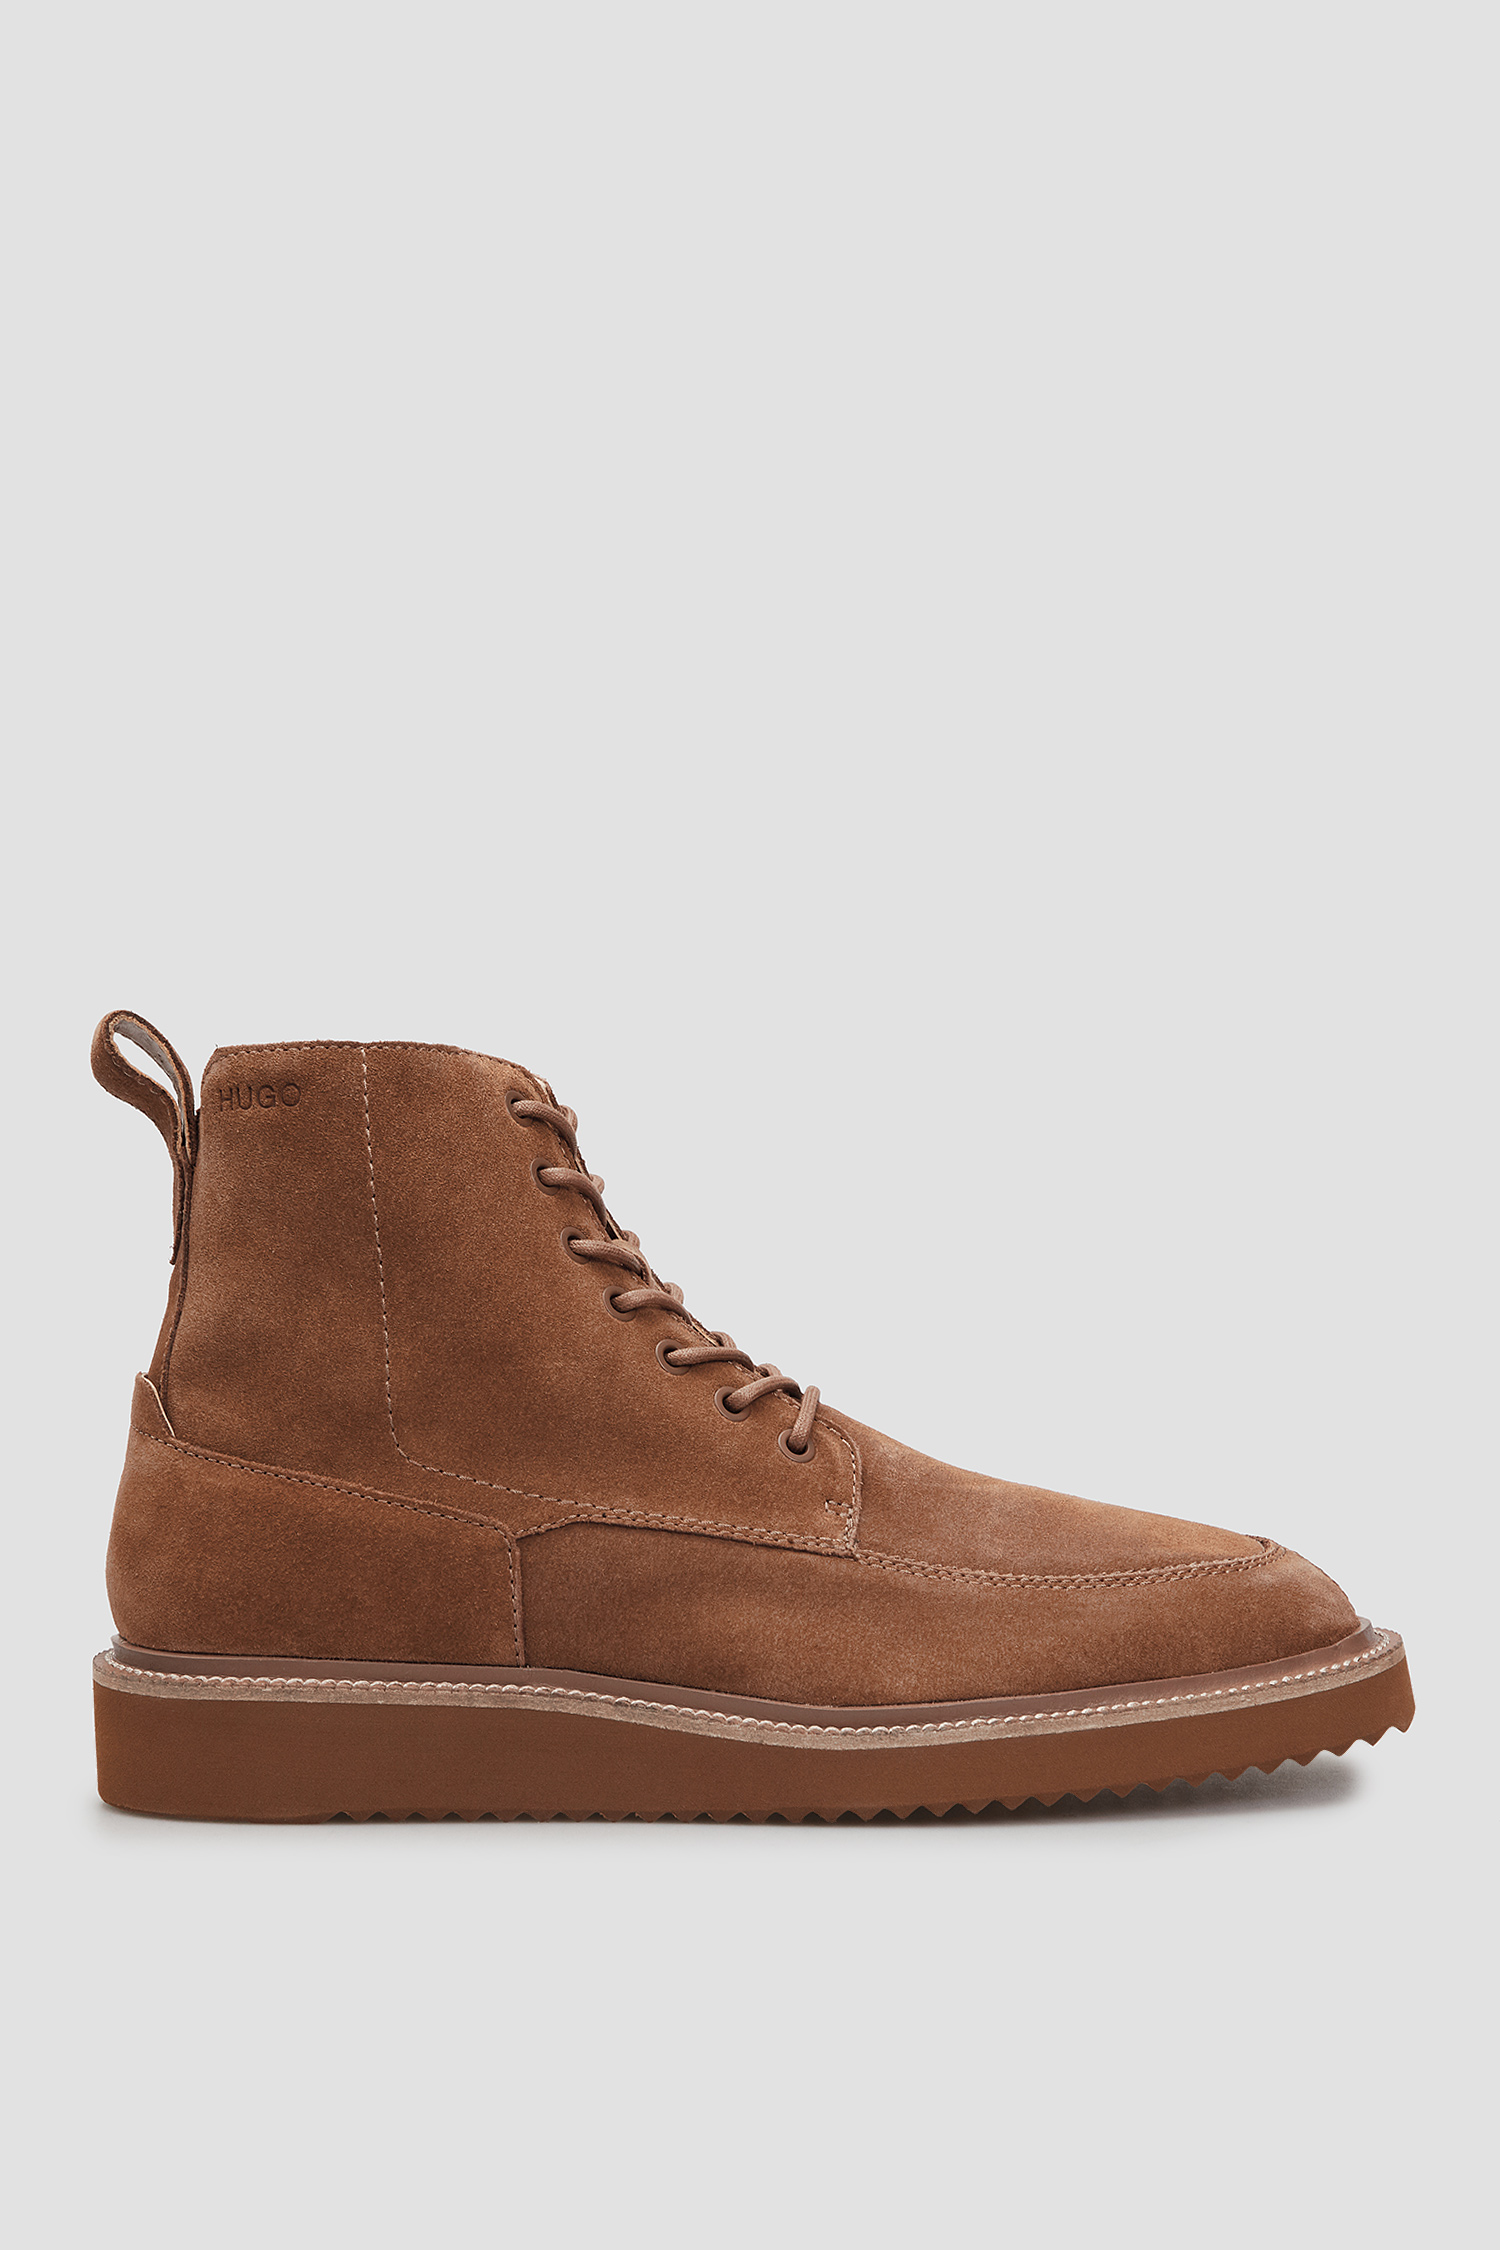 Мужские коричневые замшевые ботинки HUGO 50459691;212